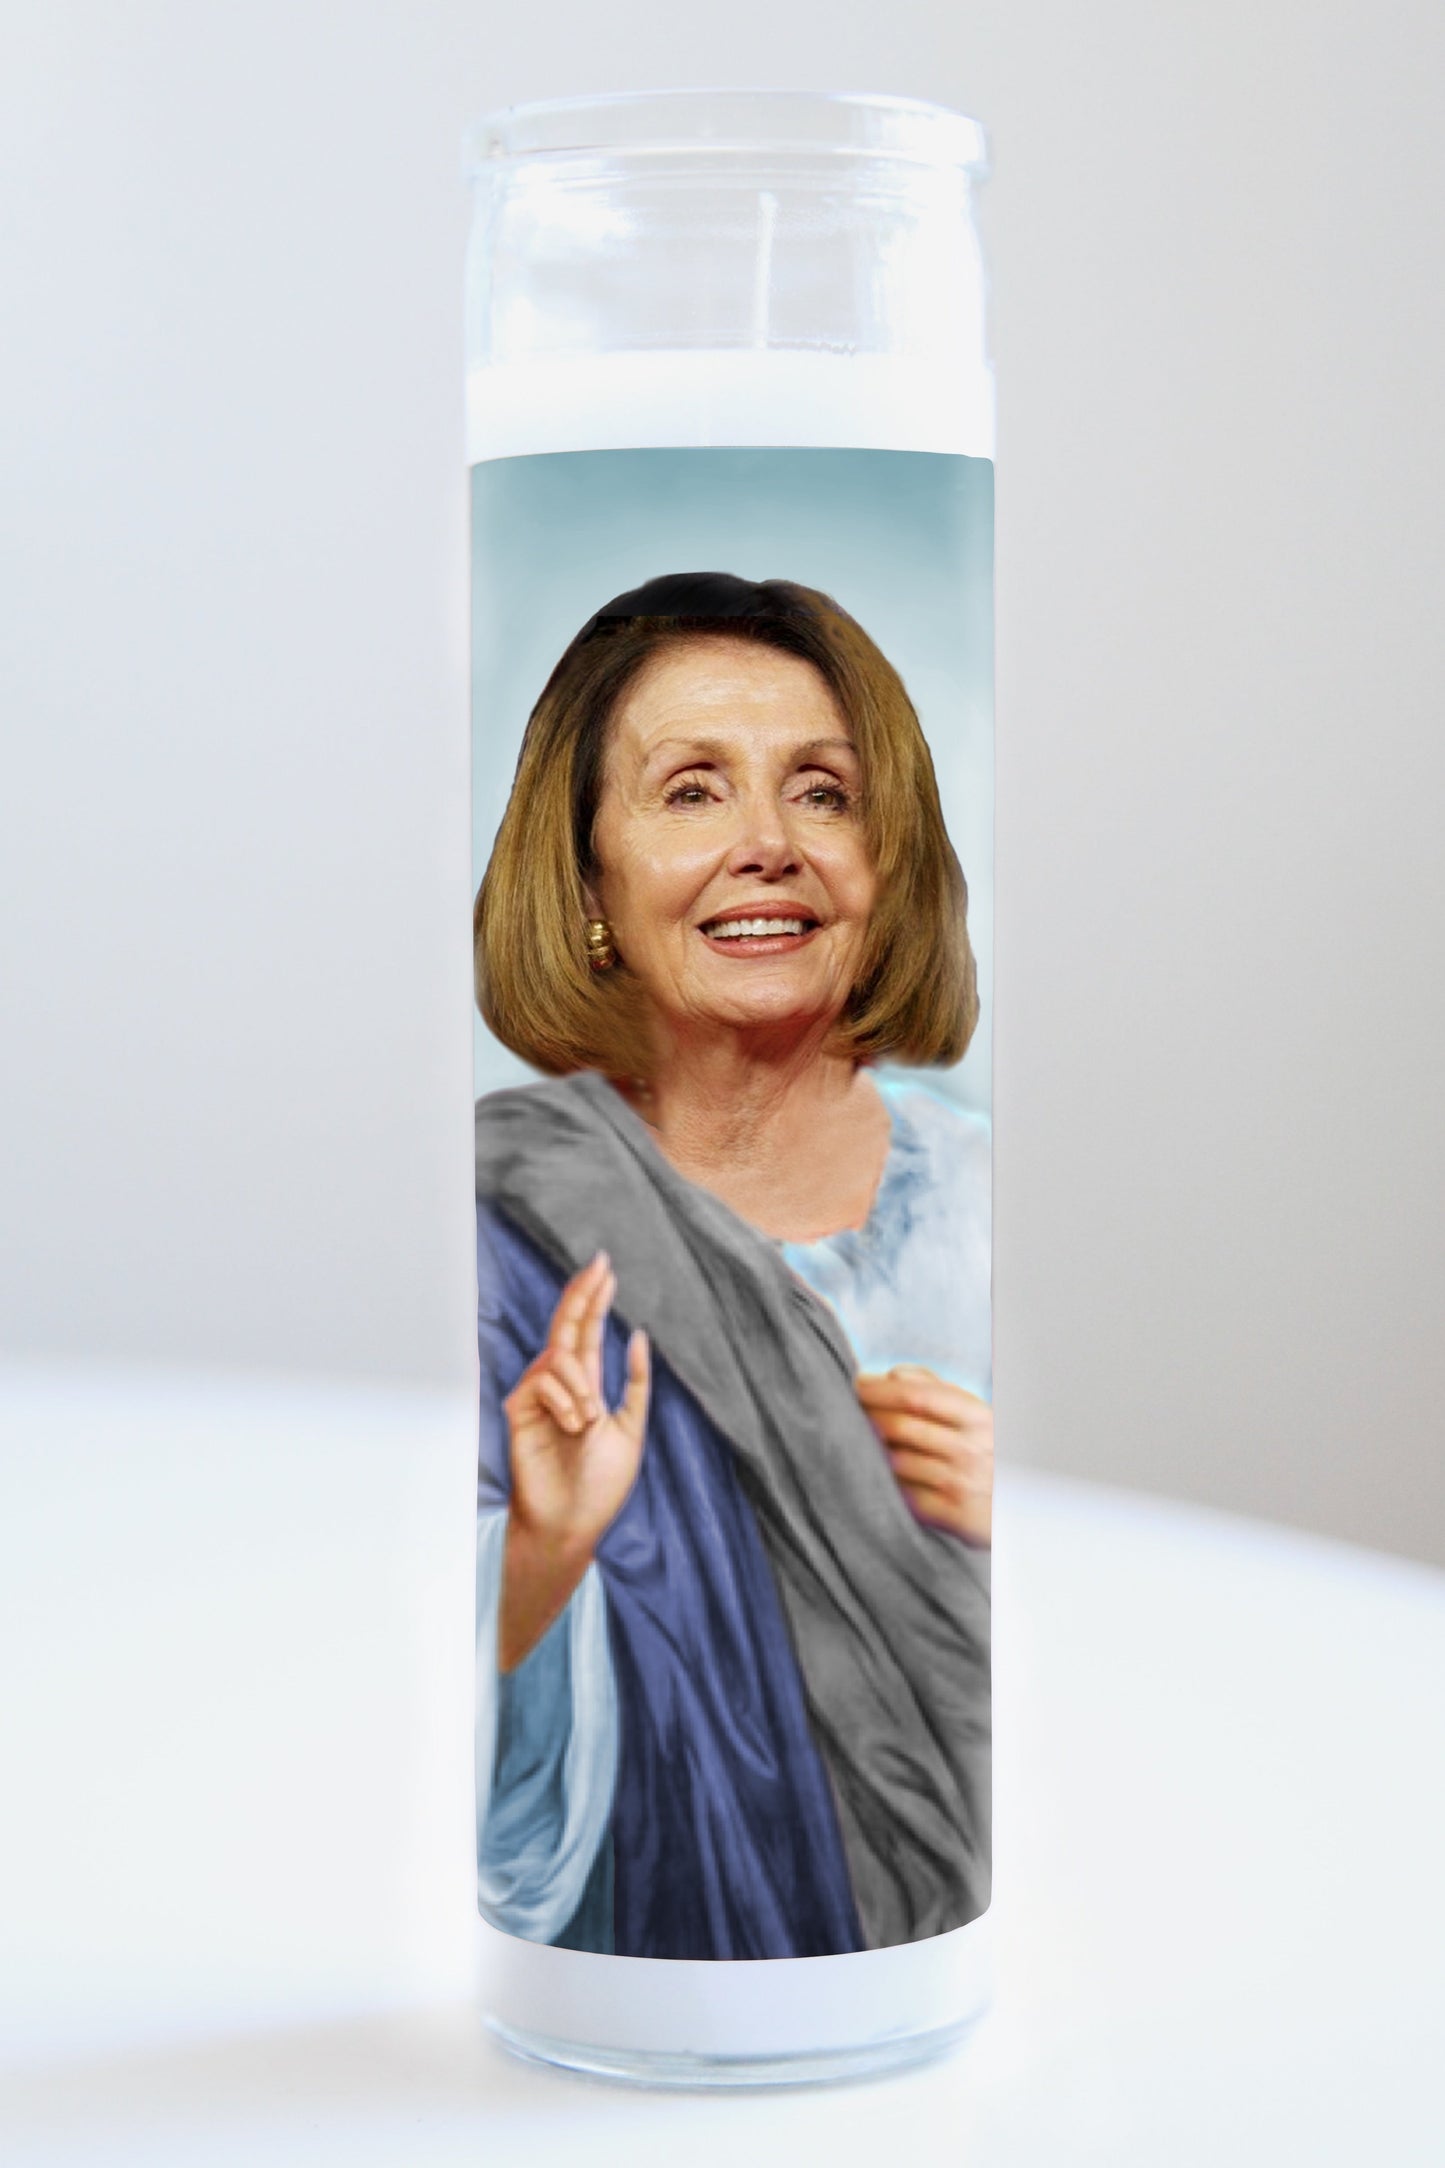 Nancy Pelosi Blue Robe Candle